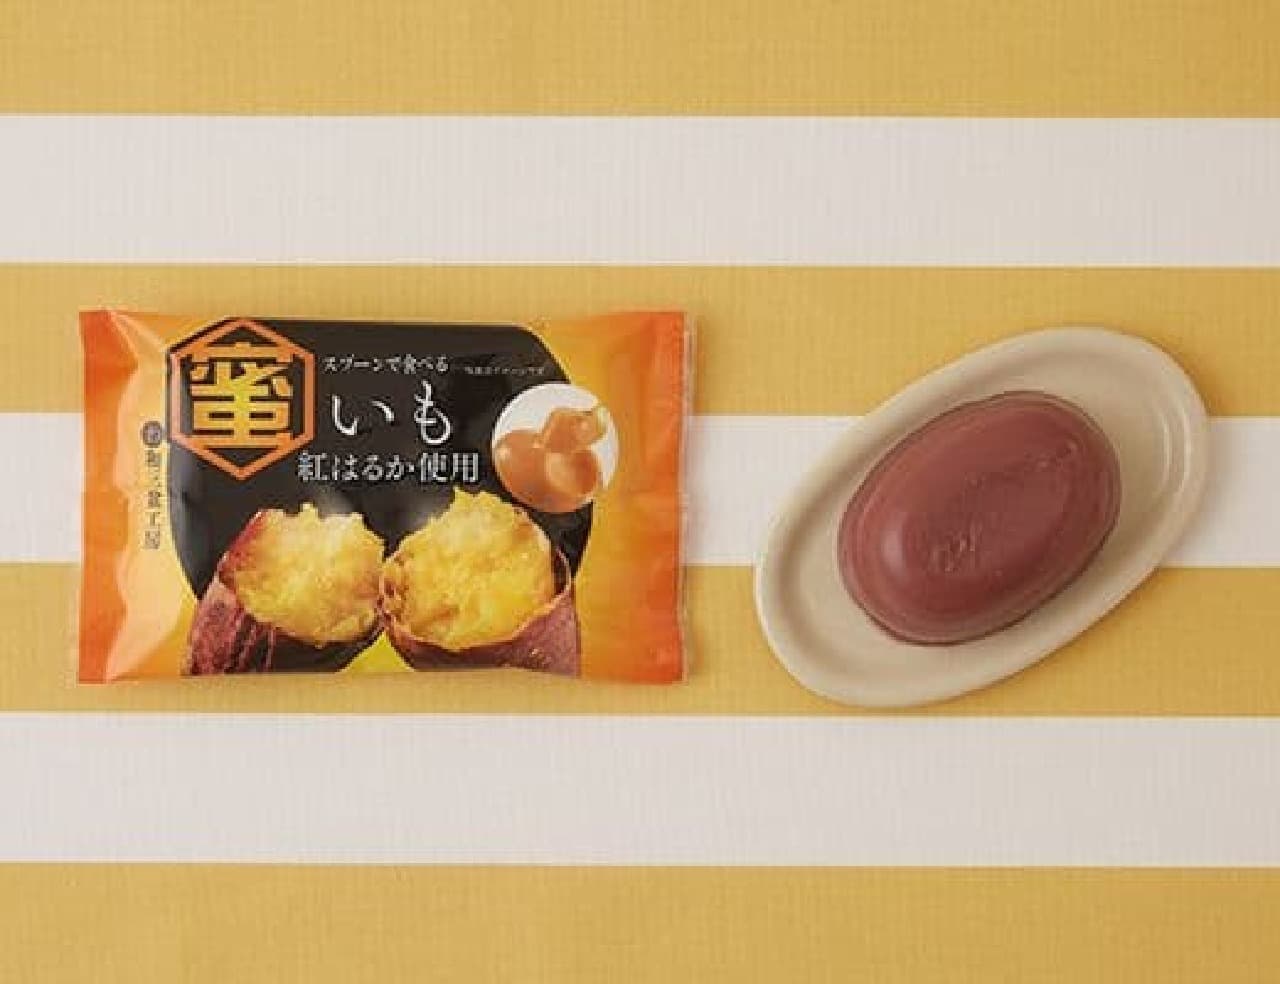 ローソン「徳島産業 スプーンで食べる蜜いも 紅はるか使用 70g」